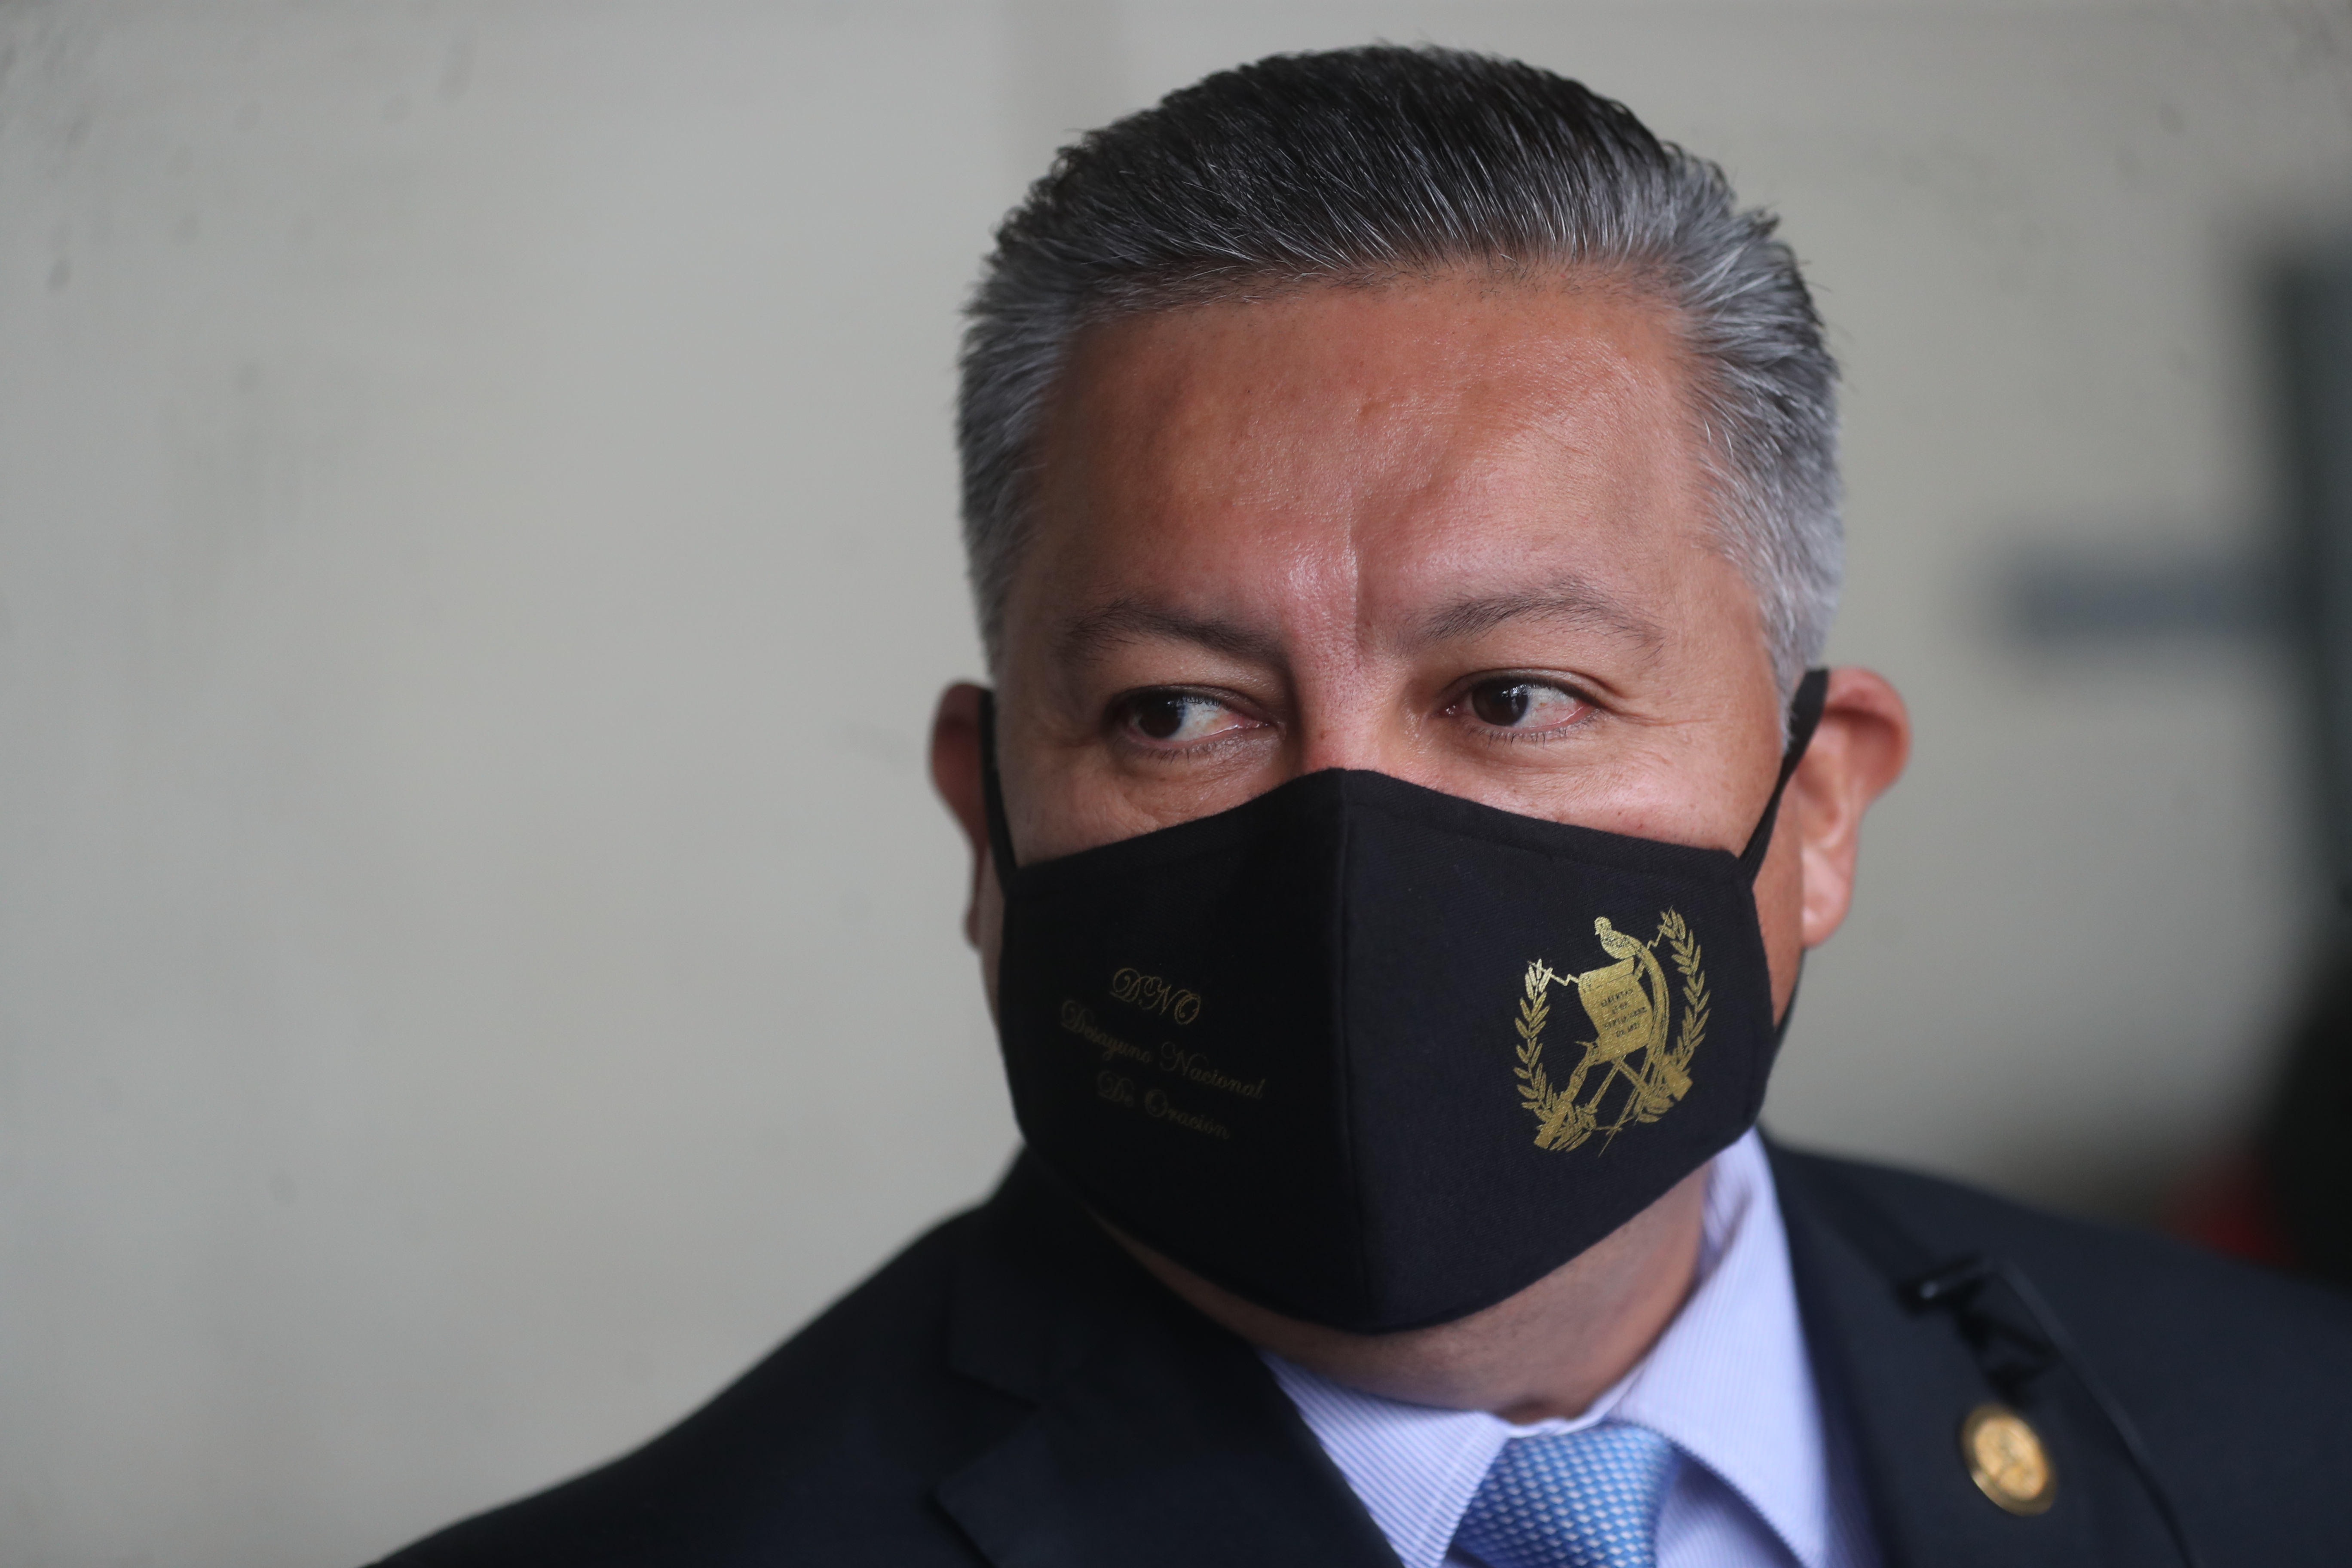 Raúl Romero, Ministro de Desarrollo, fue interpelado a finales de 2020 e inicios de 2021 por aparentes anomalías en su cartera. (Foto: Hemeroteca PL)
